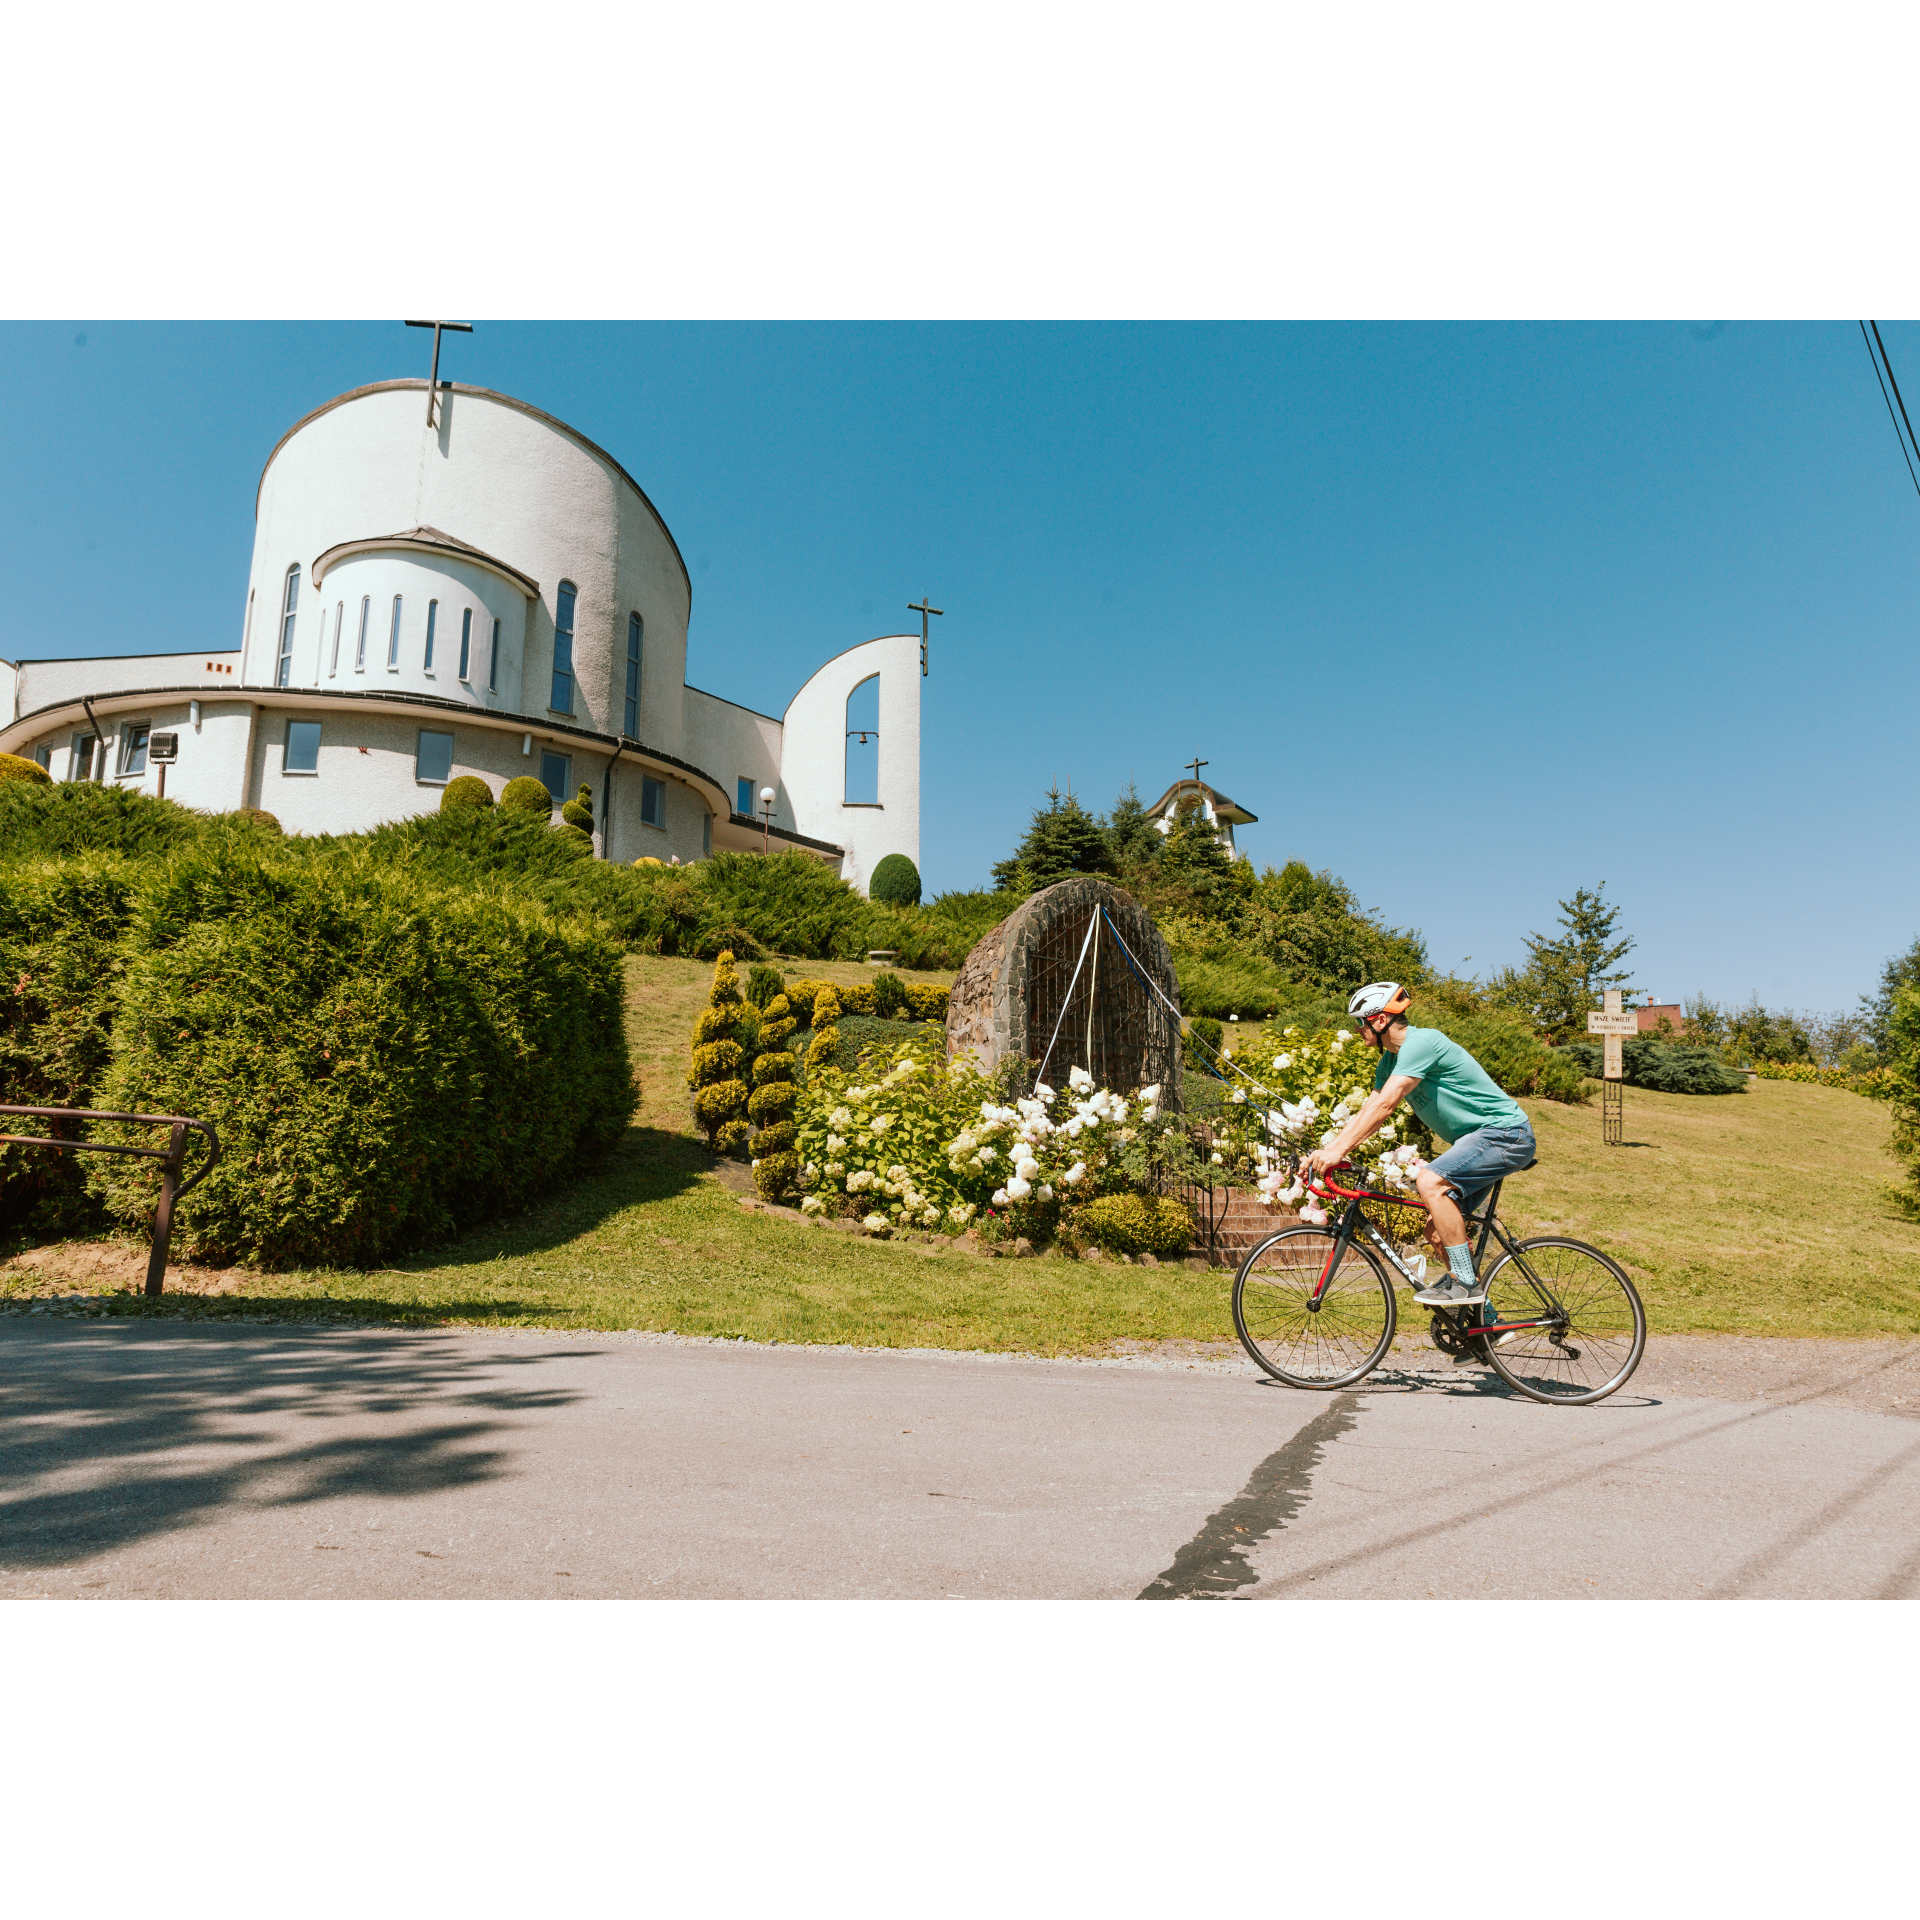 Na pierwszym planie rowerzysta w kasku jadący po asfaltowej ulicy, w tle na wzniesieniu biały budynek kościoła z okrągłą fasadą, wokół zielona roślinność i kapliczka